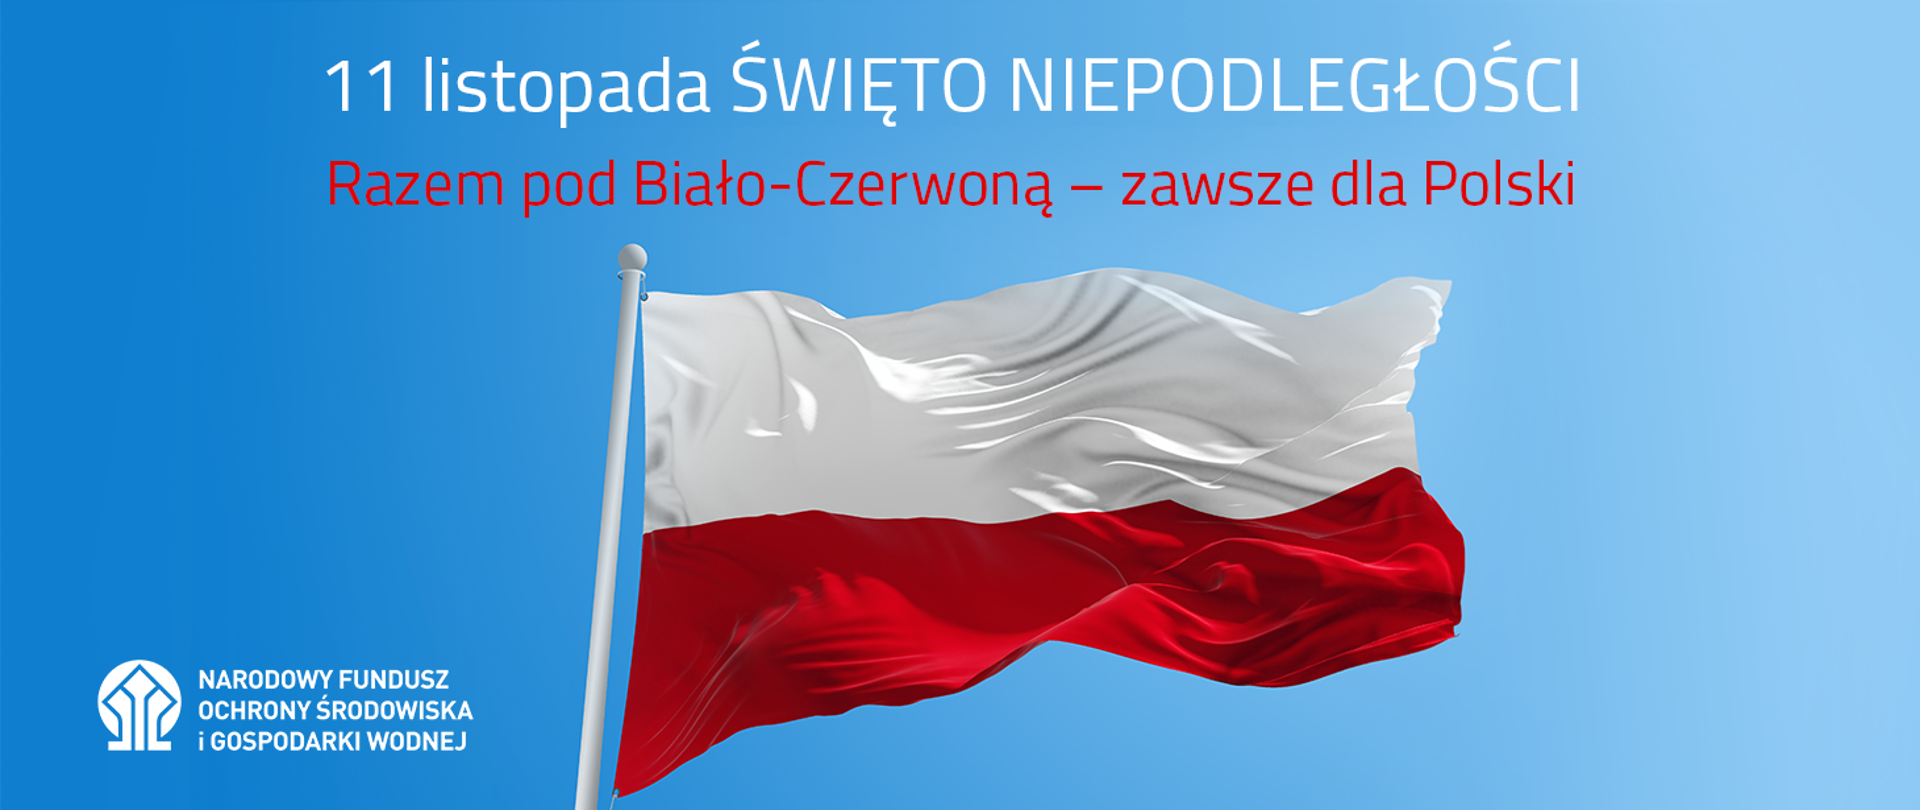 Flaga Rzeczpospolitej Polskiej na tle nieba, nad nią napis: "11 listopada ŚWIĘTO NIEPODLEGŁOŚCI. Razem pod Biało-Czerwoną - zawsze dla Polski", a poniżej po lewej logotyp NFOŚiGW.